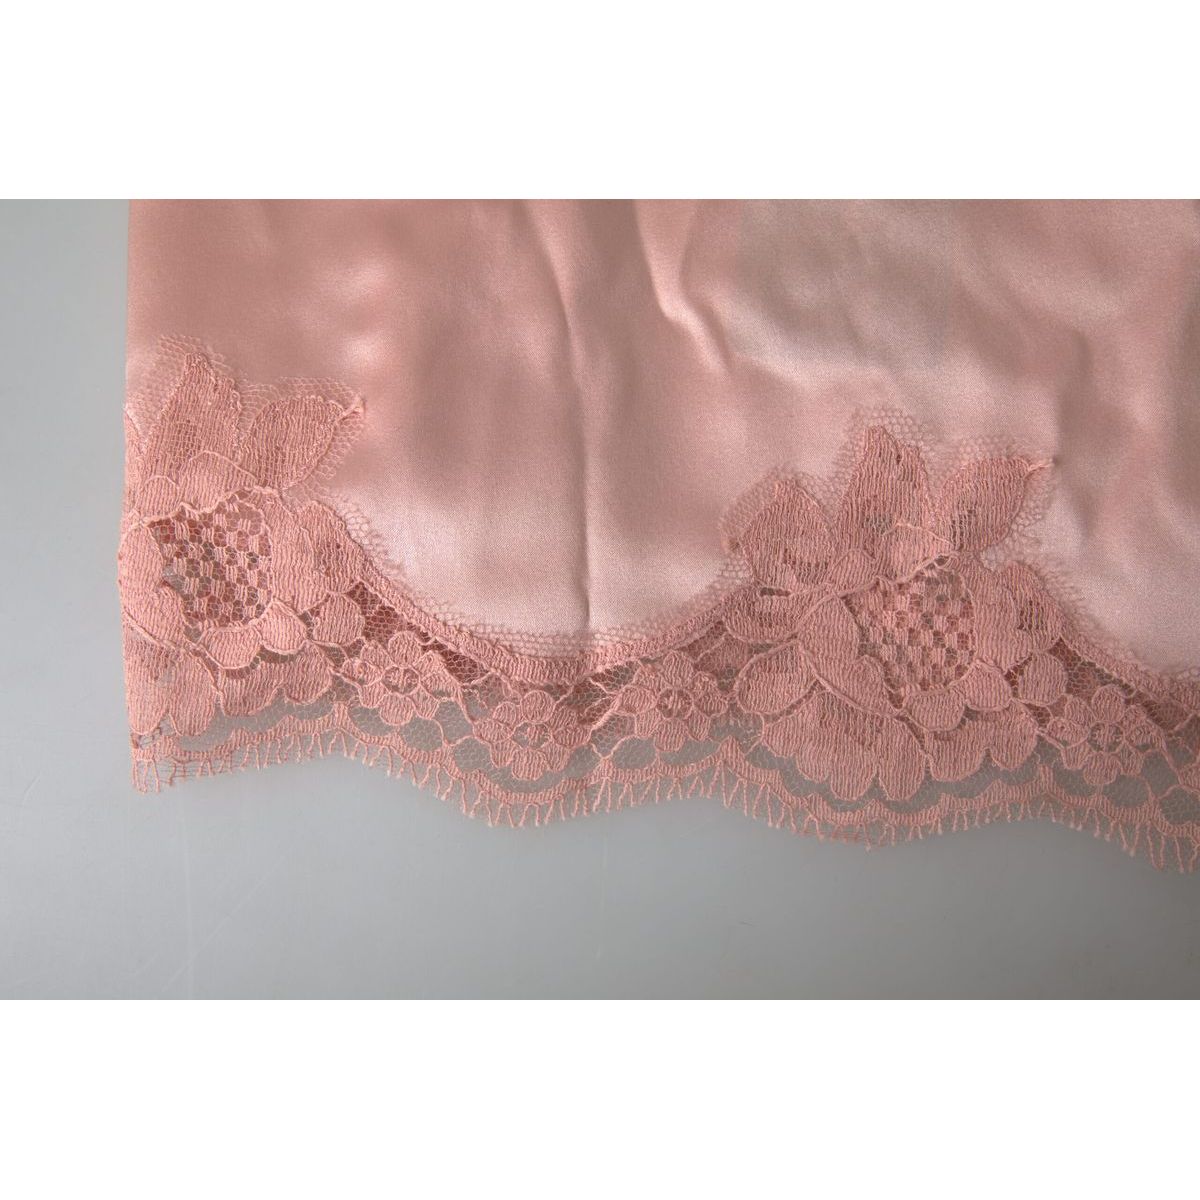 Dolce & Gabbana Elegant Silk Blend Camisole antique-rose-lace-silk-camisole-top-underwear